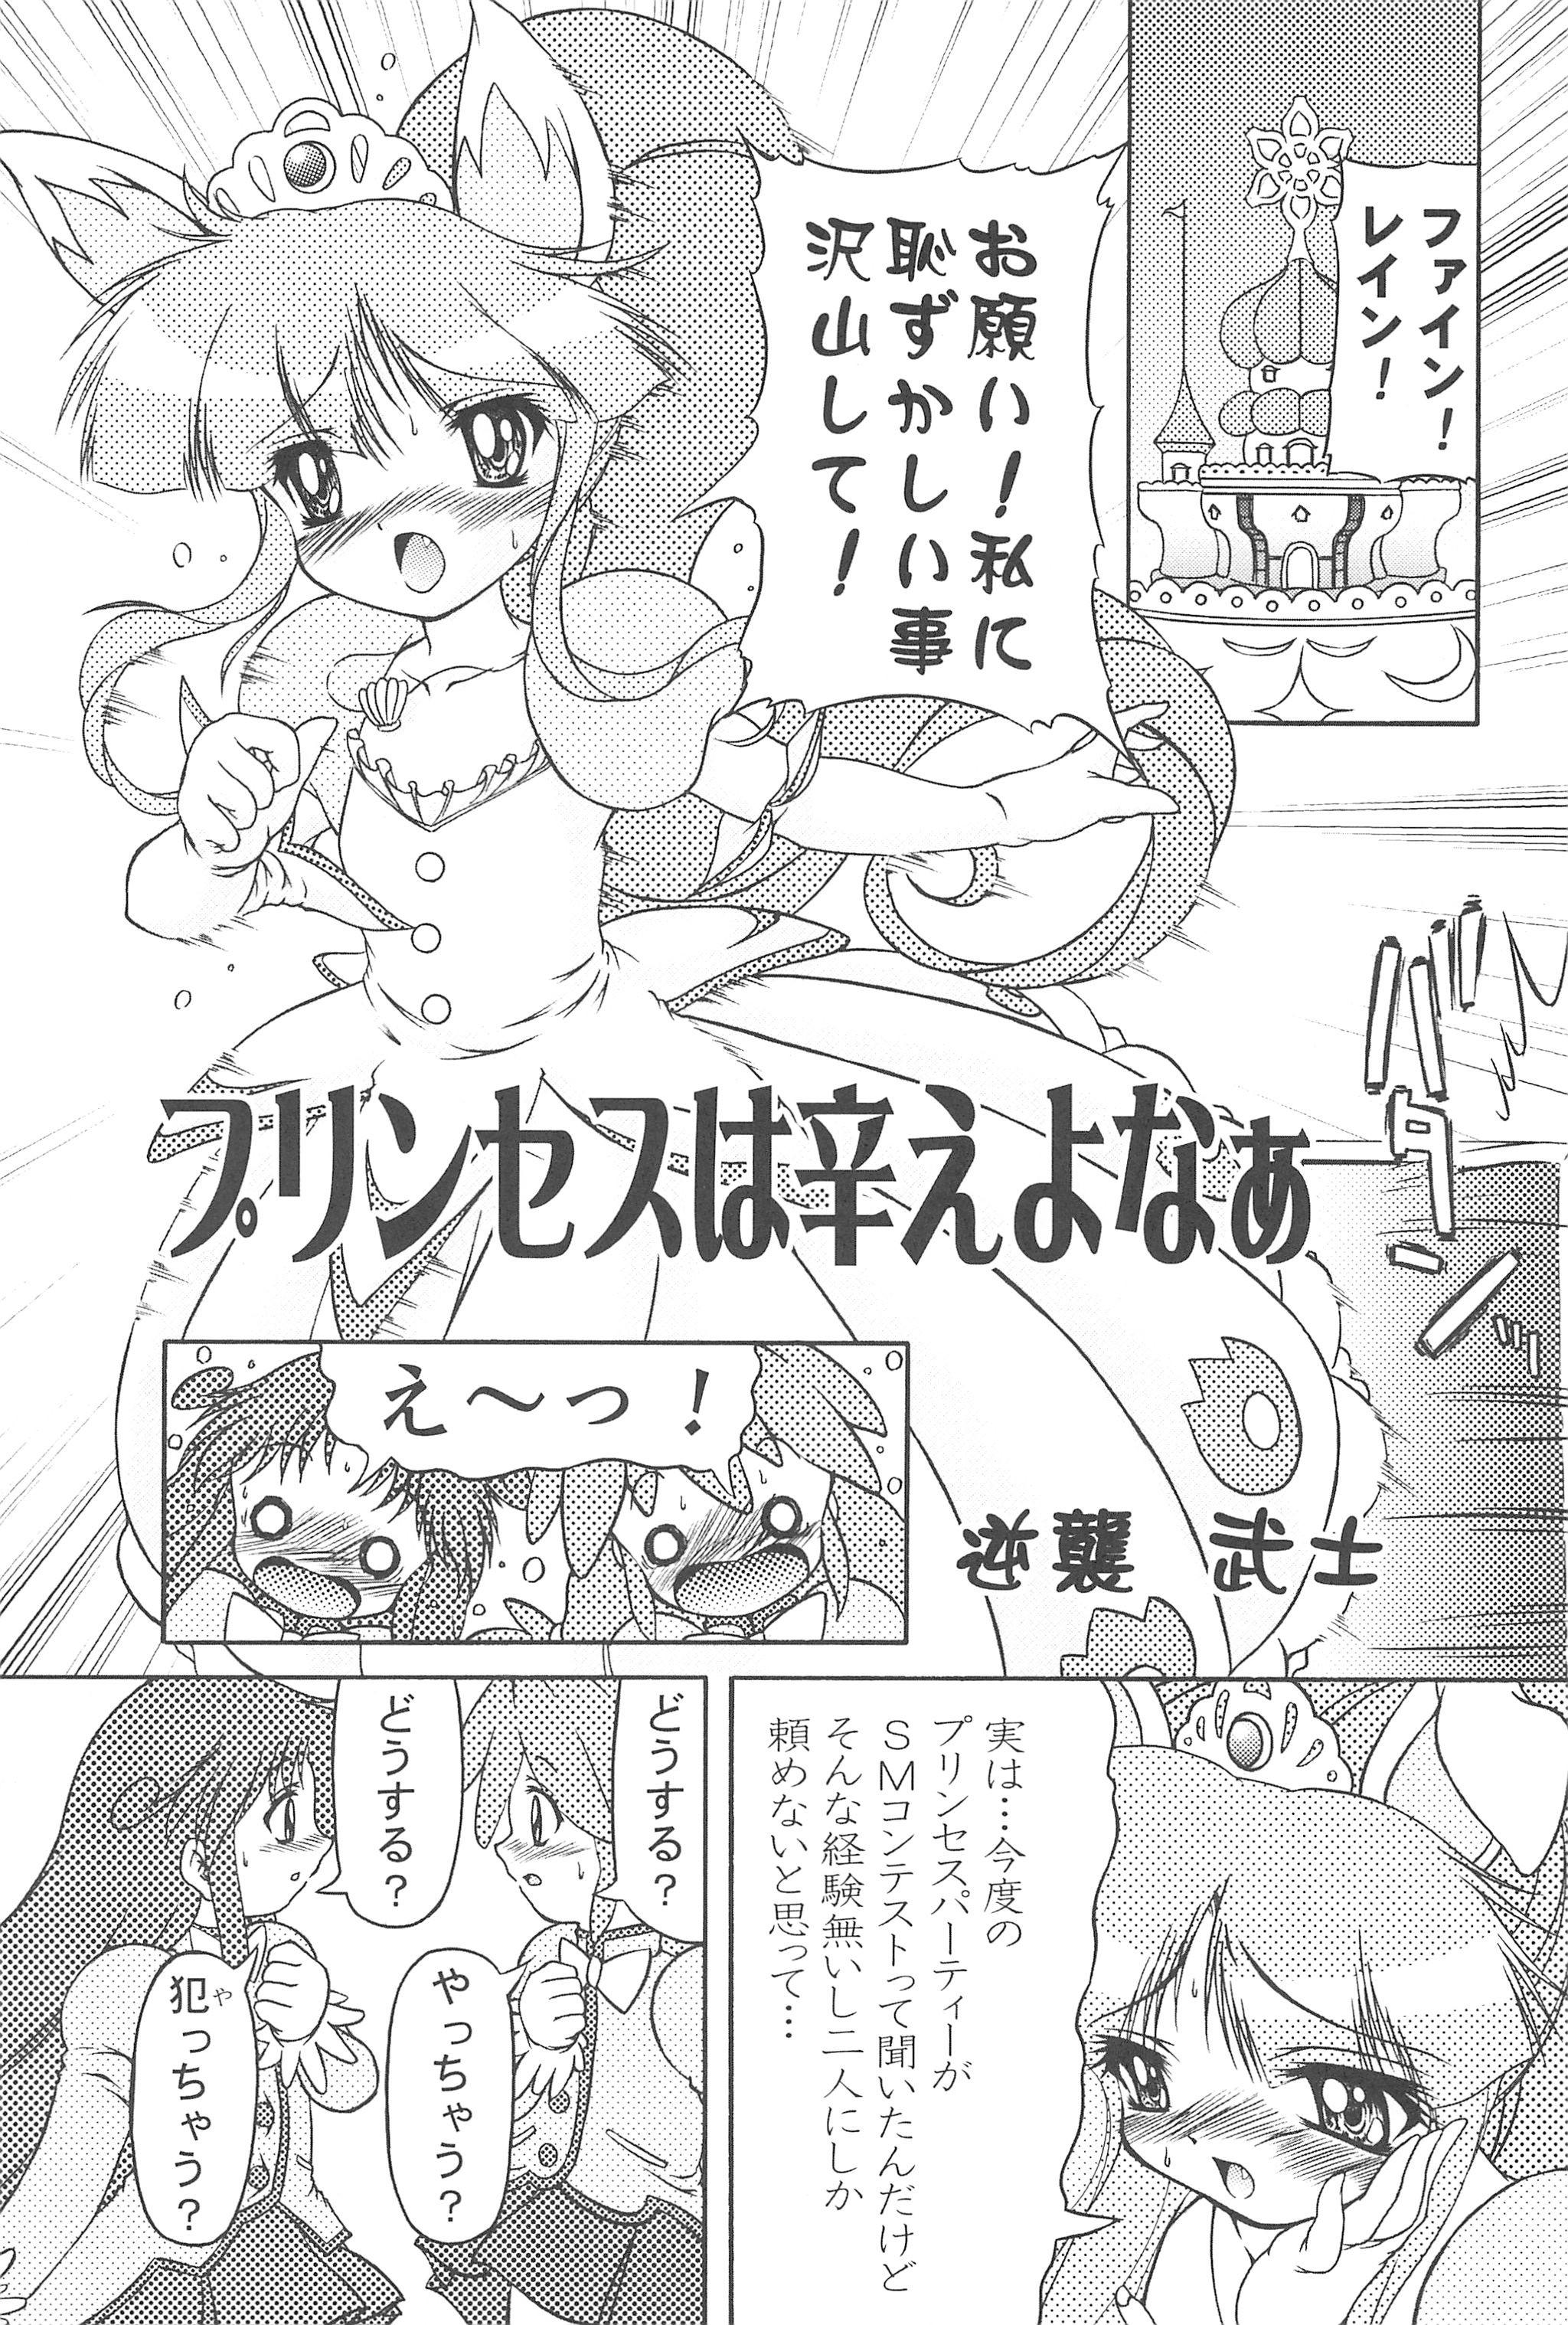 Blackdick Mijuku!! Hanjuku!! Lori Lori Mori!! 6 - Fushigiboshi no futagohime Gay Smoking - Page 7